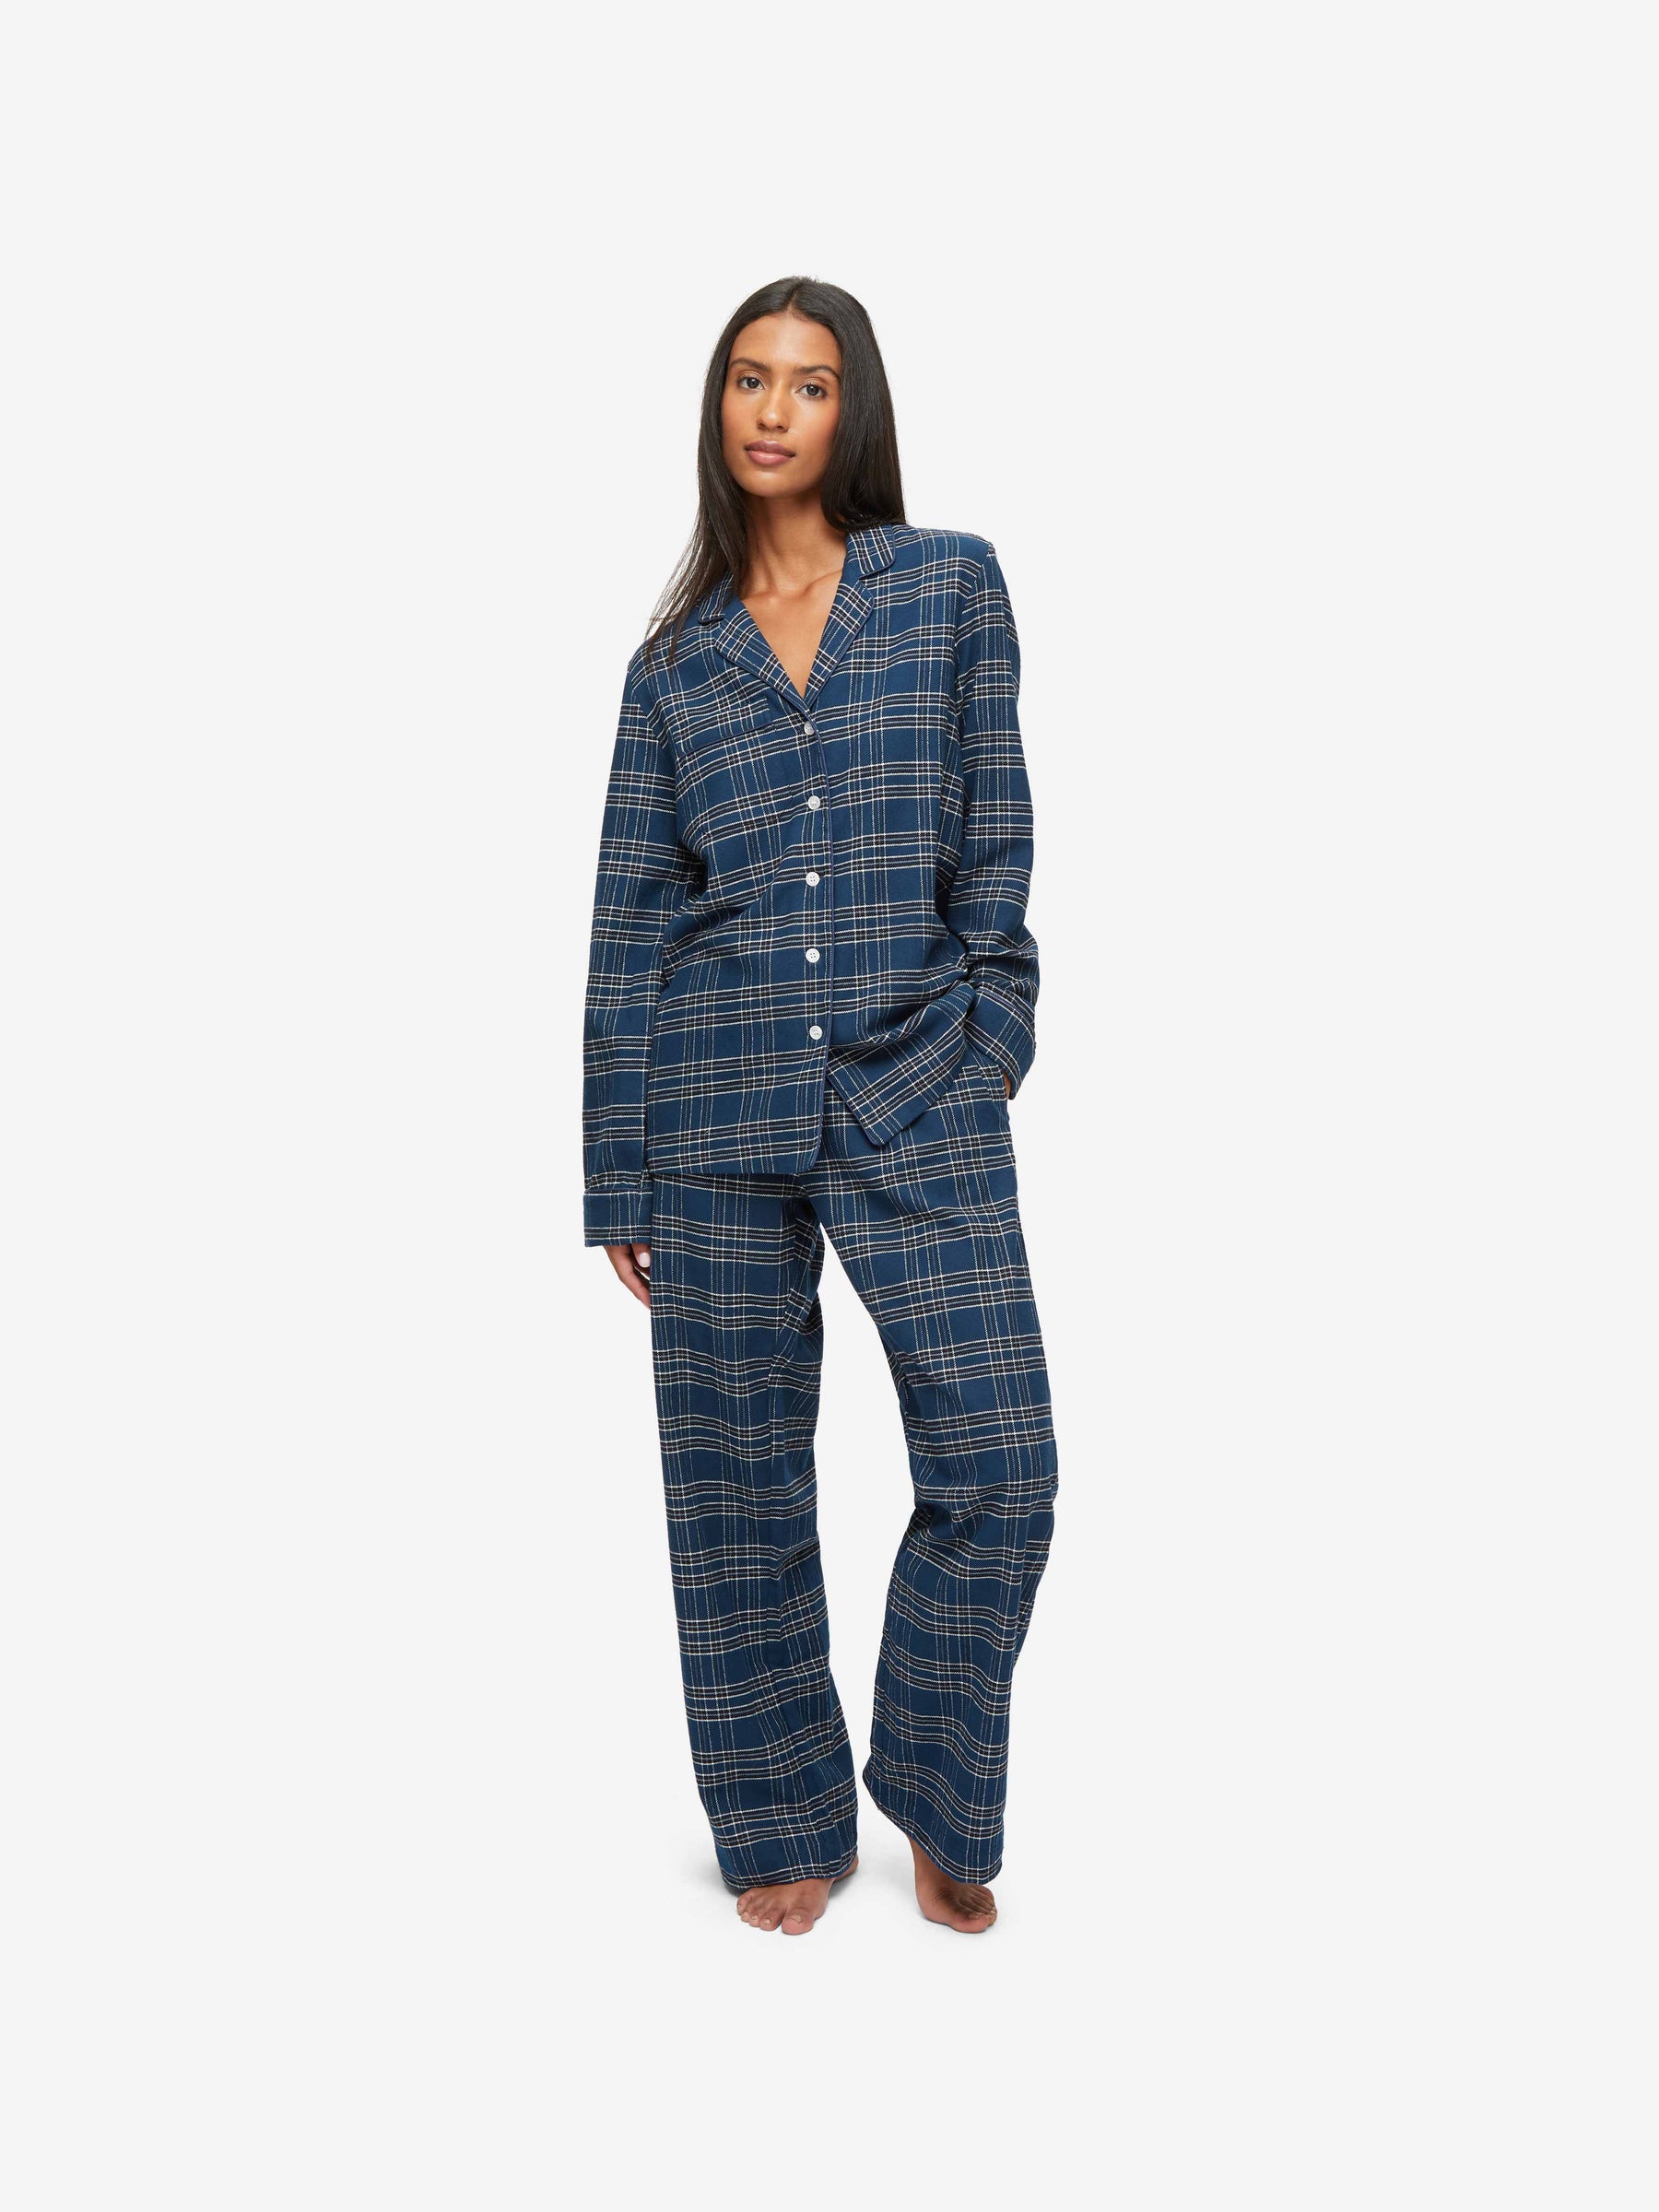 Women's Pyjamas Kelburn 30 Brushed Cotton Navy